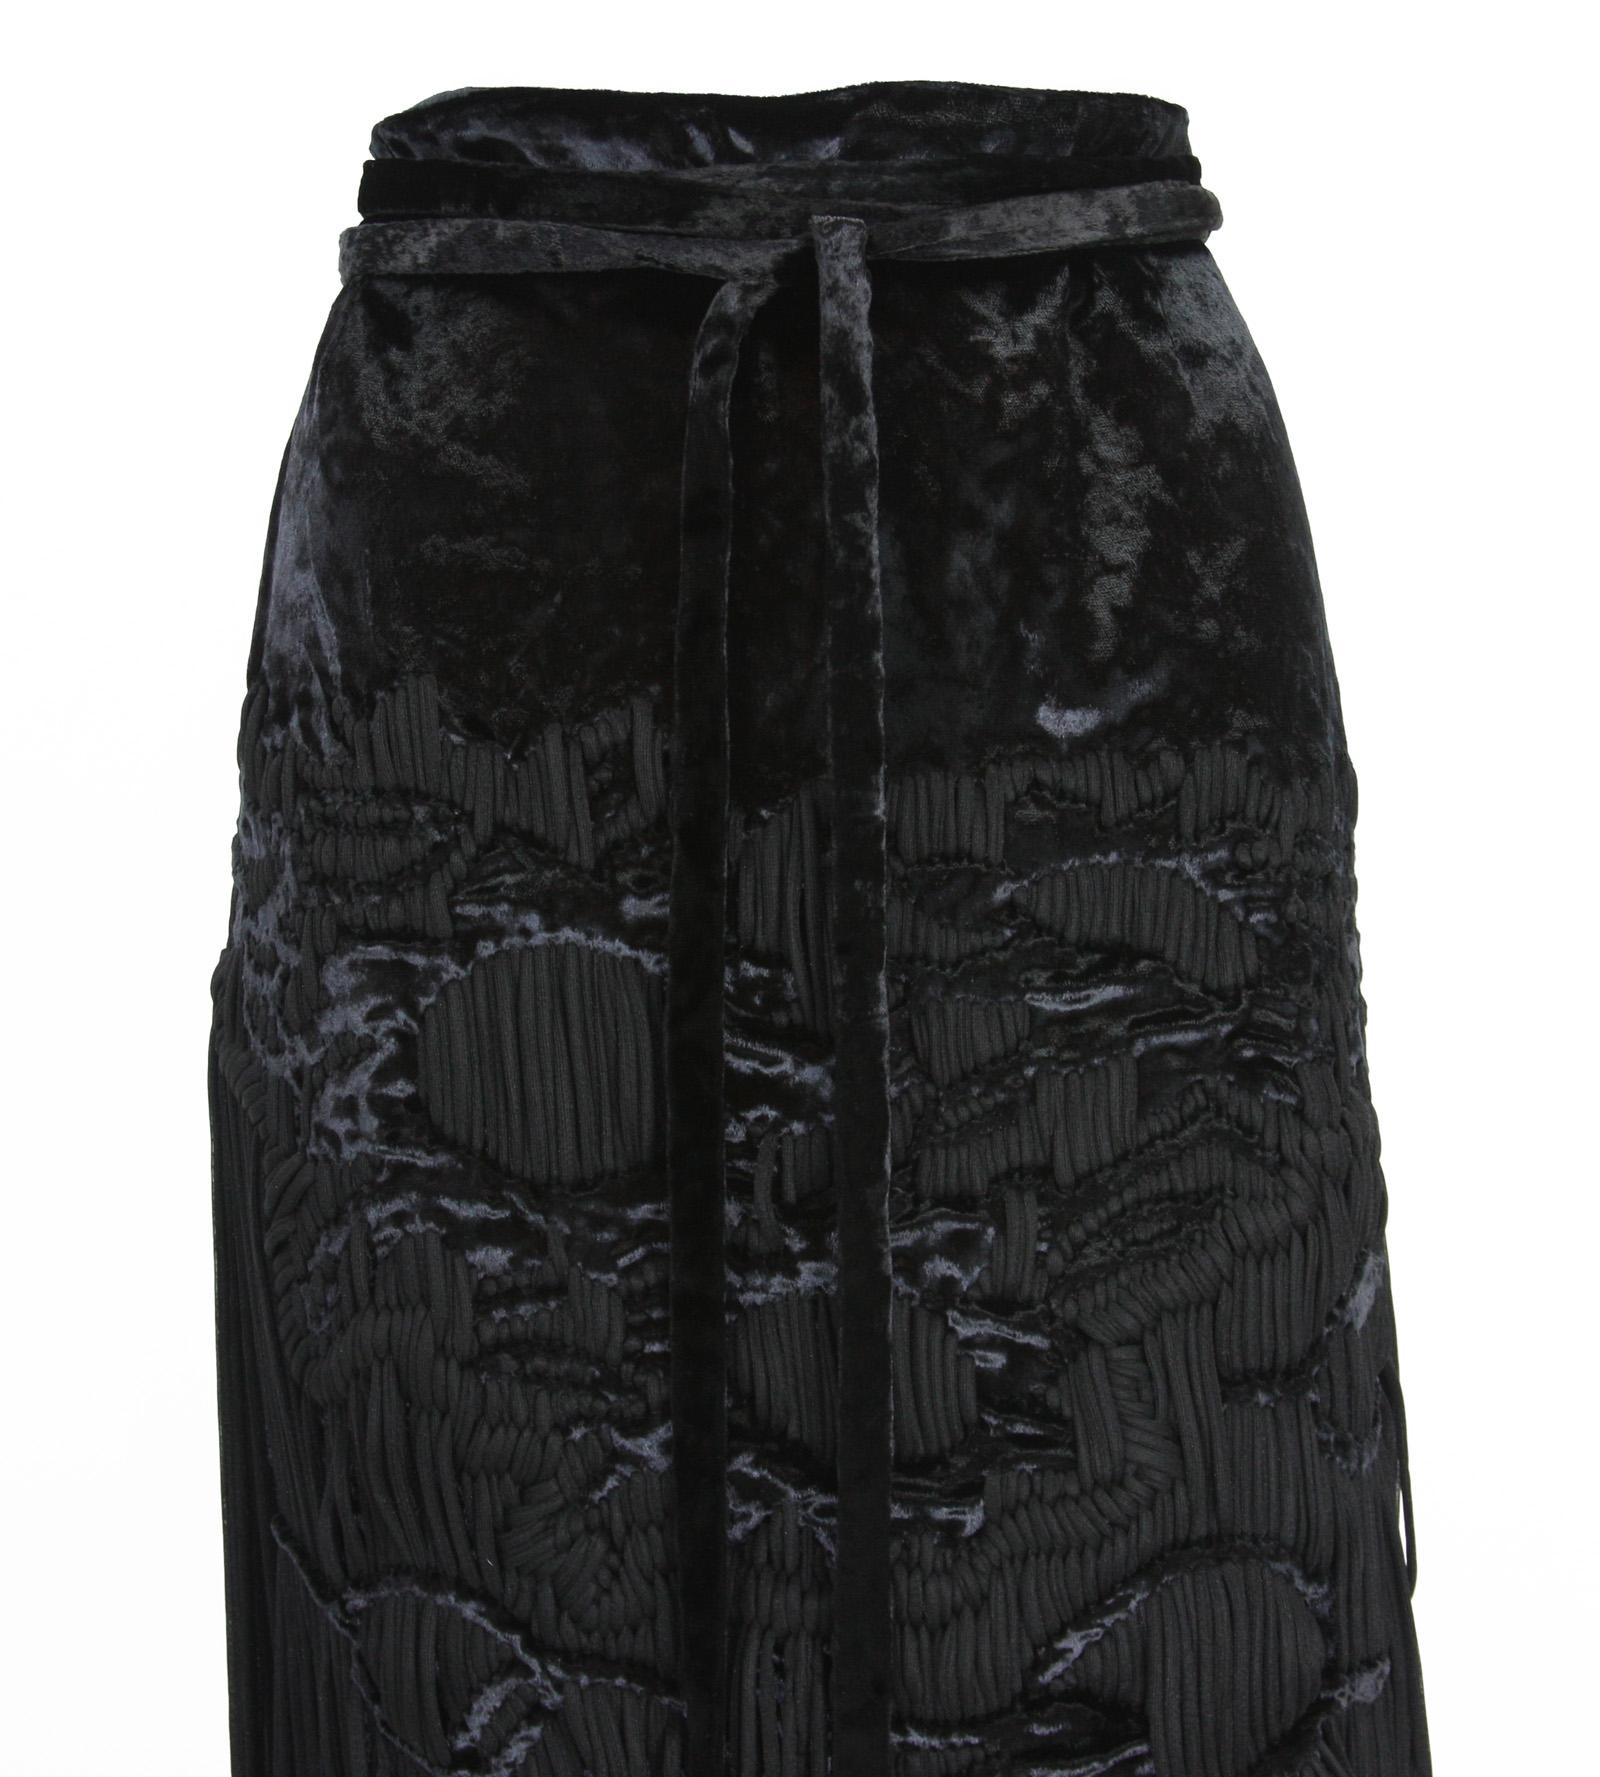 Tom Ford for Yves Saint Laurent 2001-2003 Collection Silk Top Velvet Skirt Suit  For Sale 9